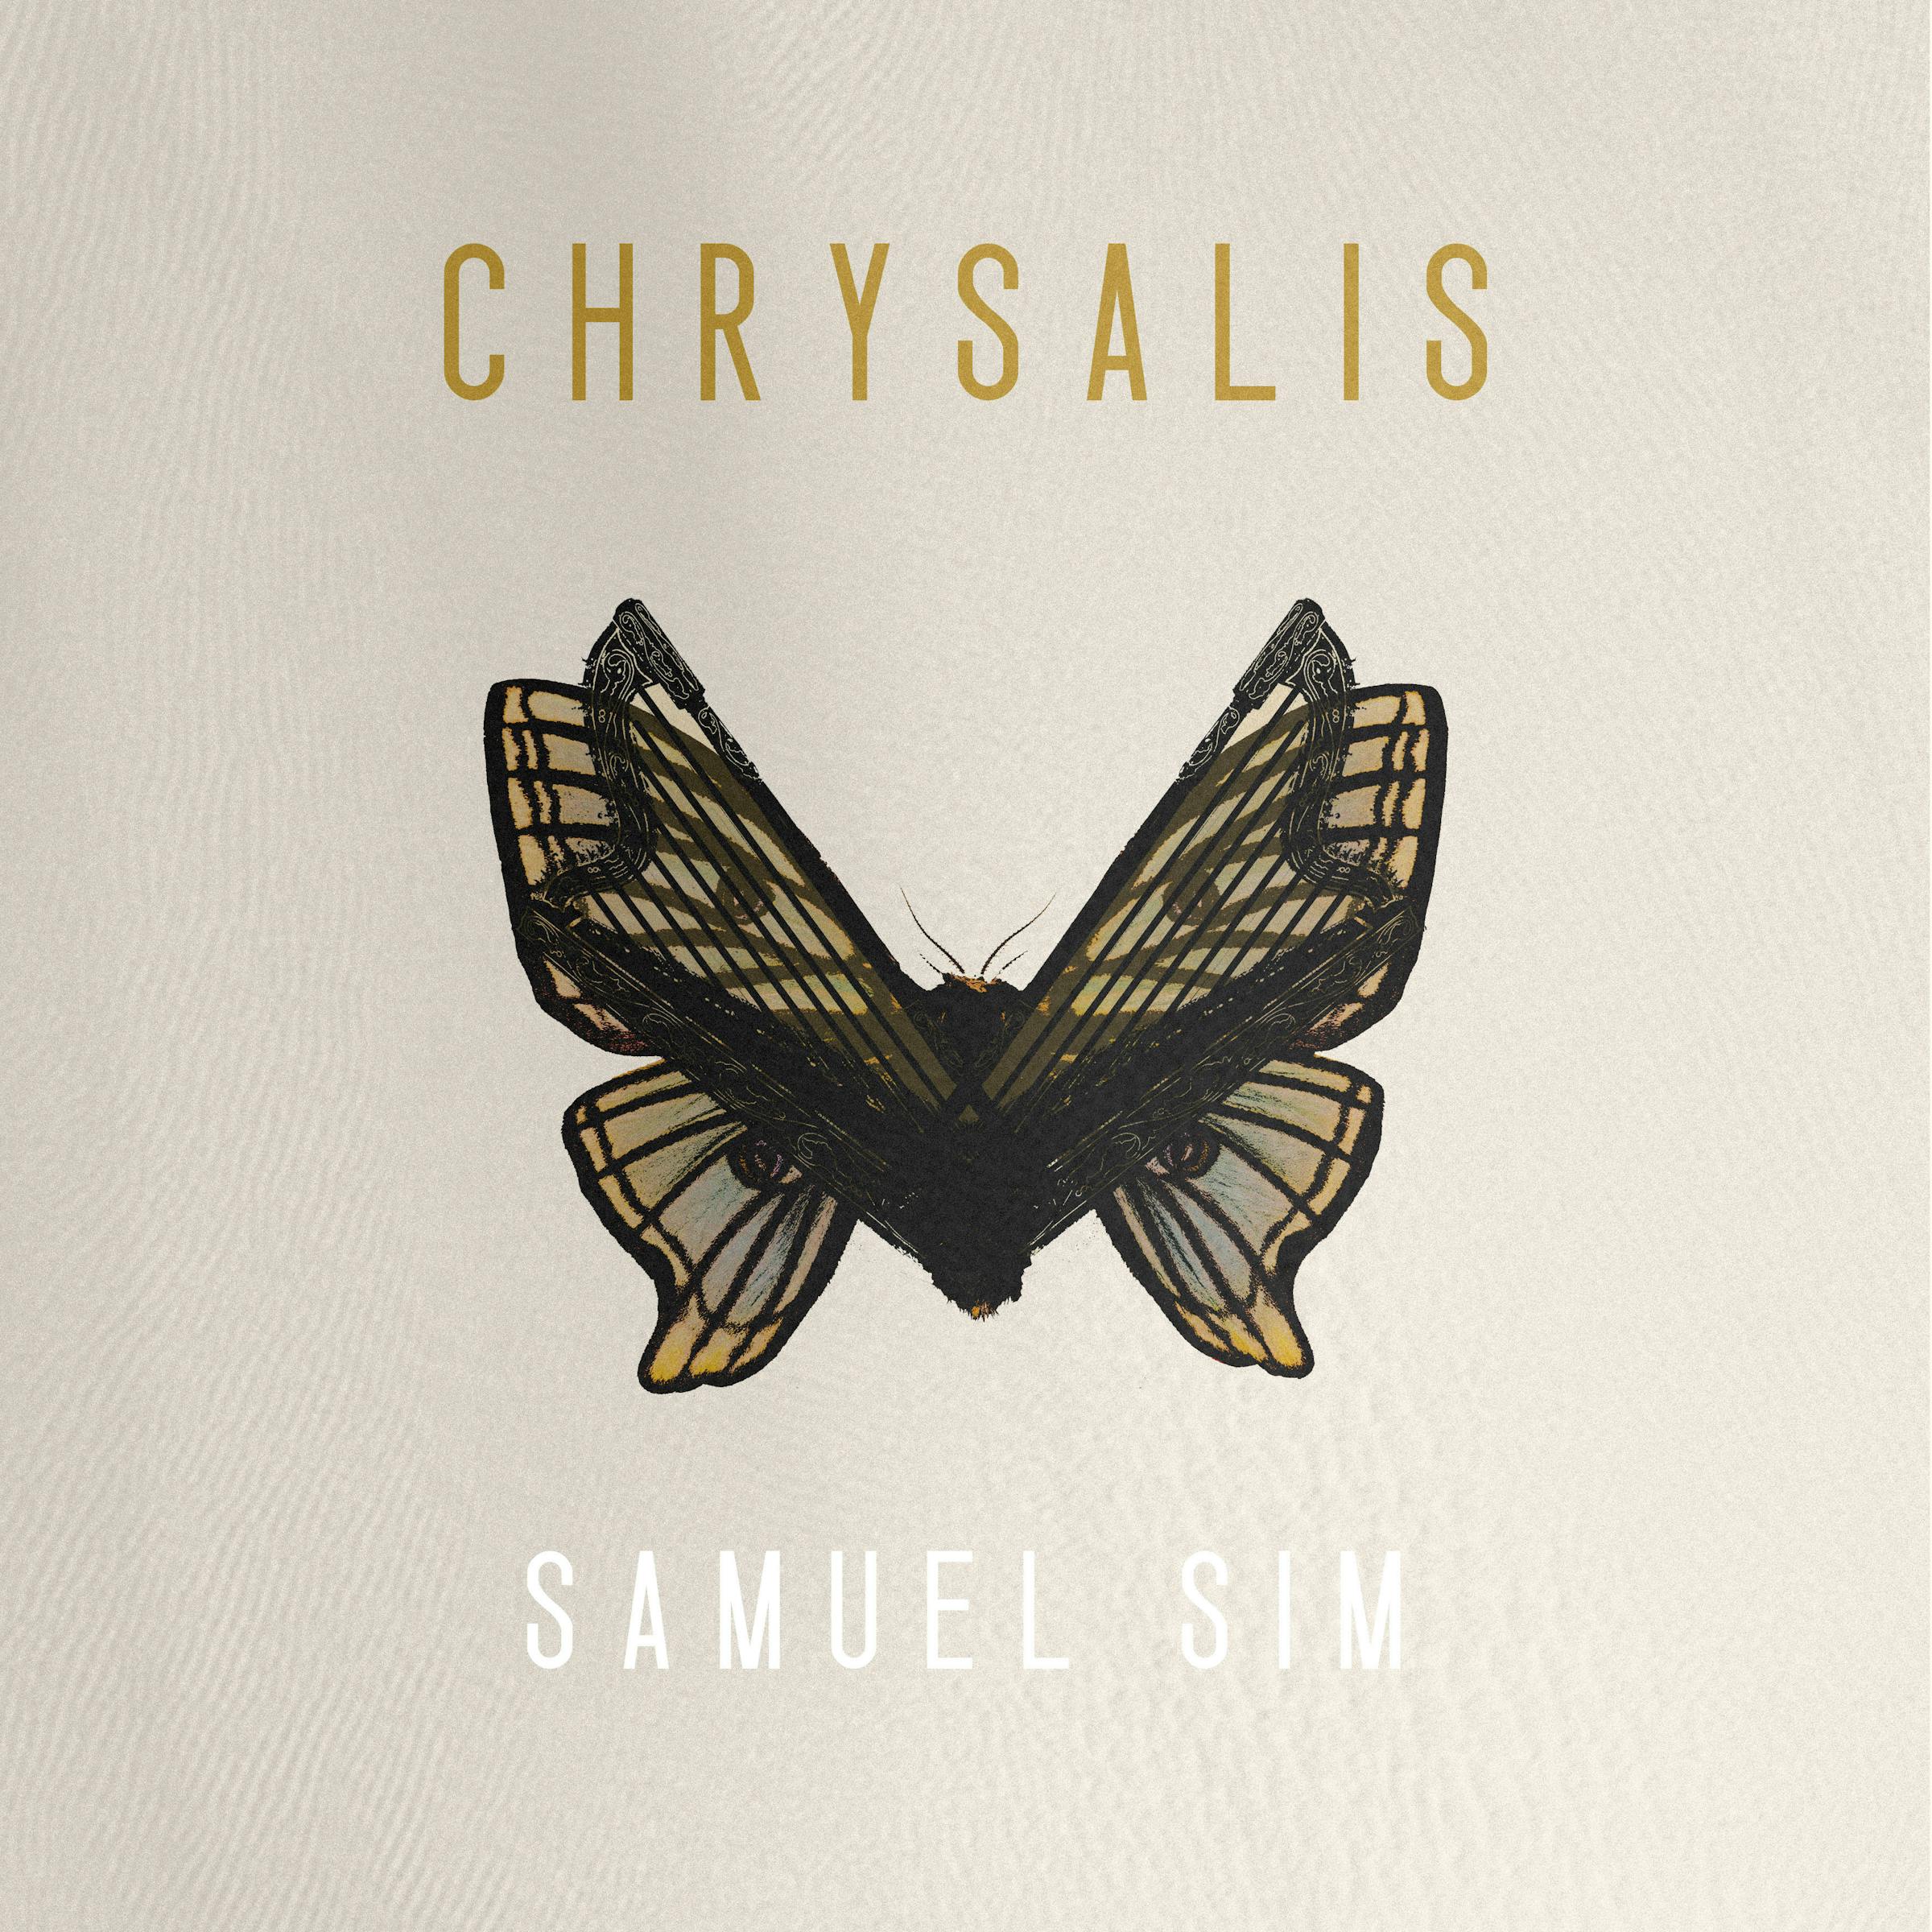 Samuel Sim - Chrysalis artwork